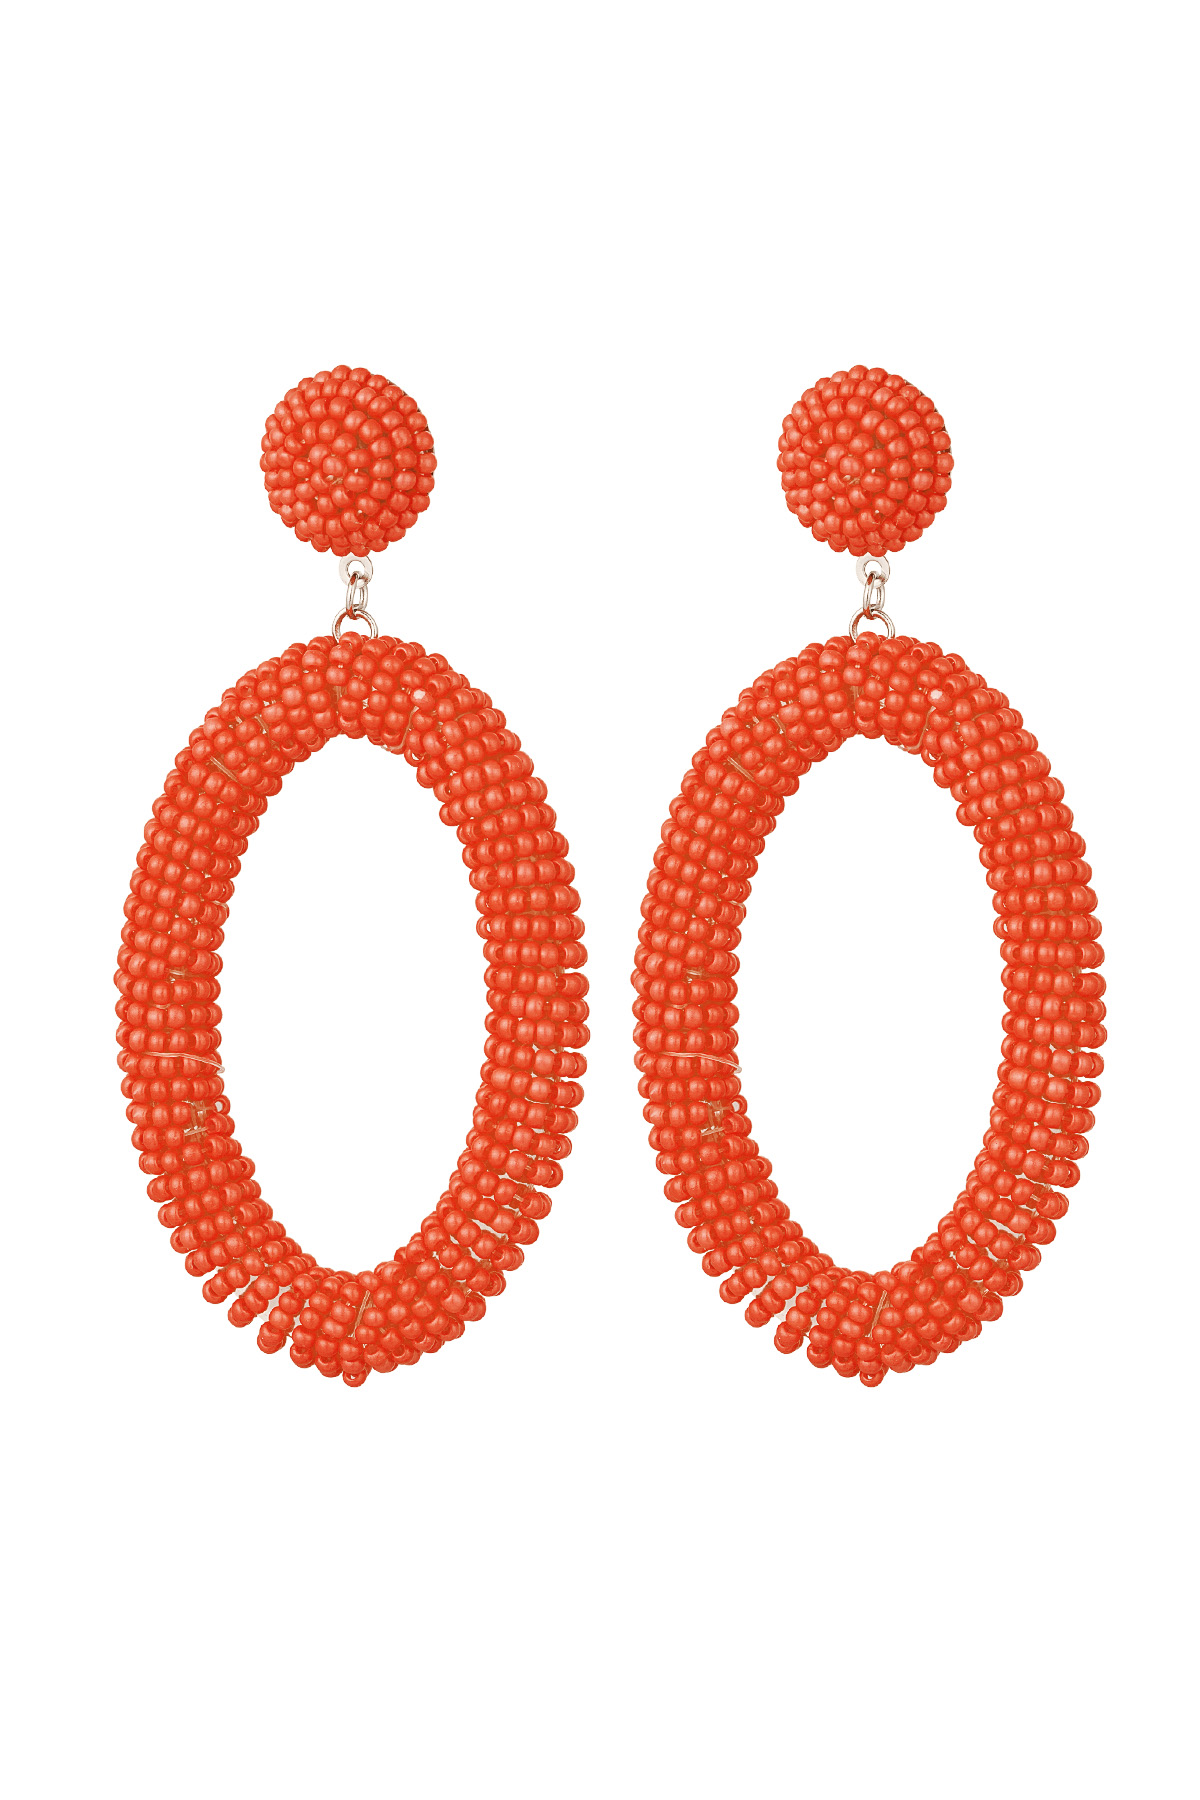 Orecchini perline caramelle allungate - arancio Acciaio inossidabile h5 